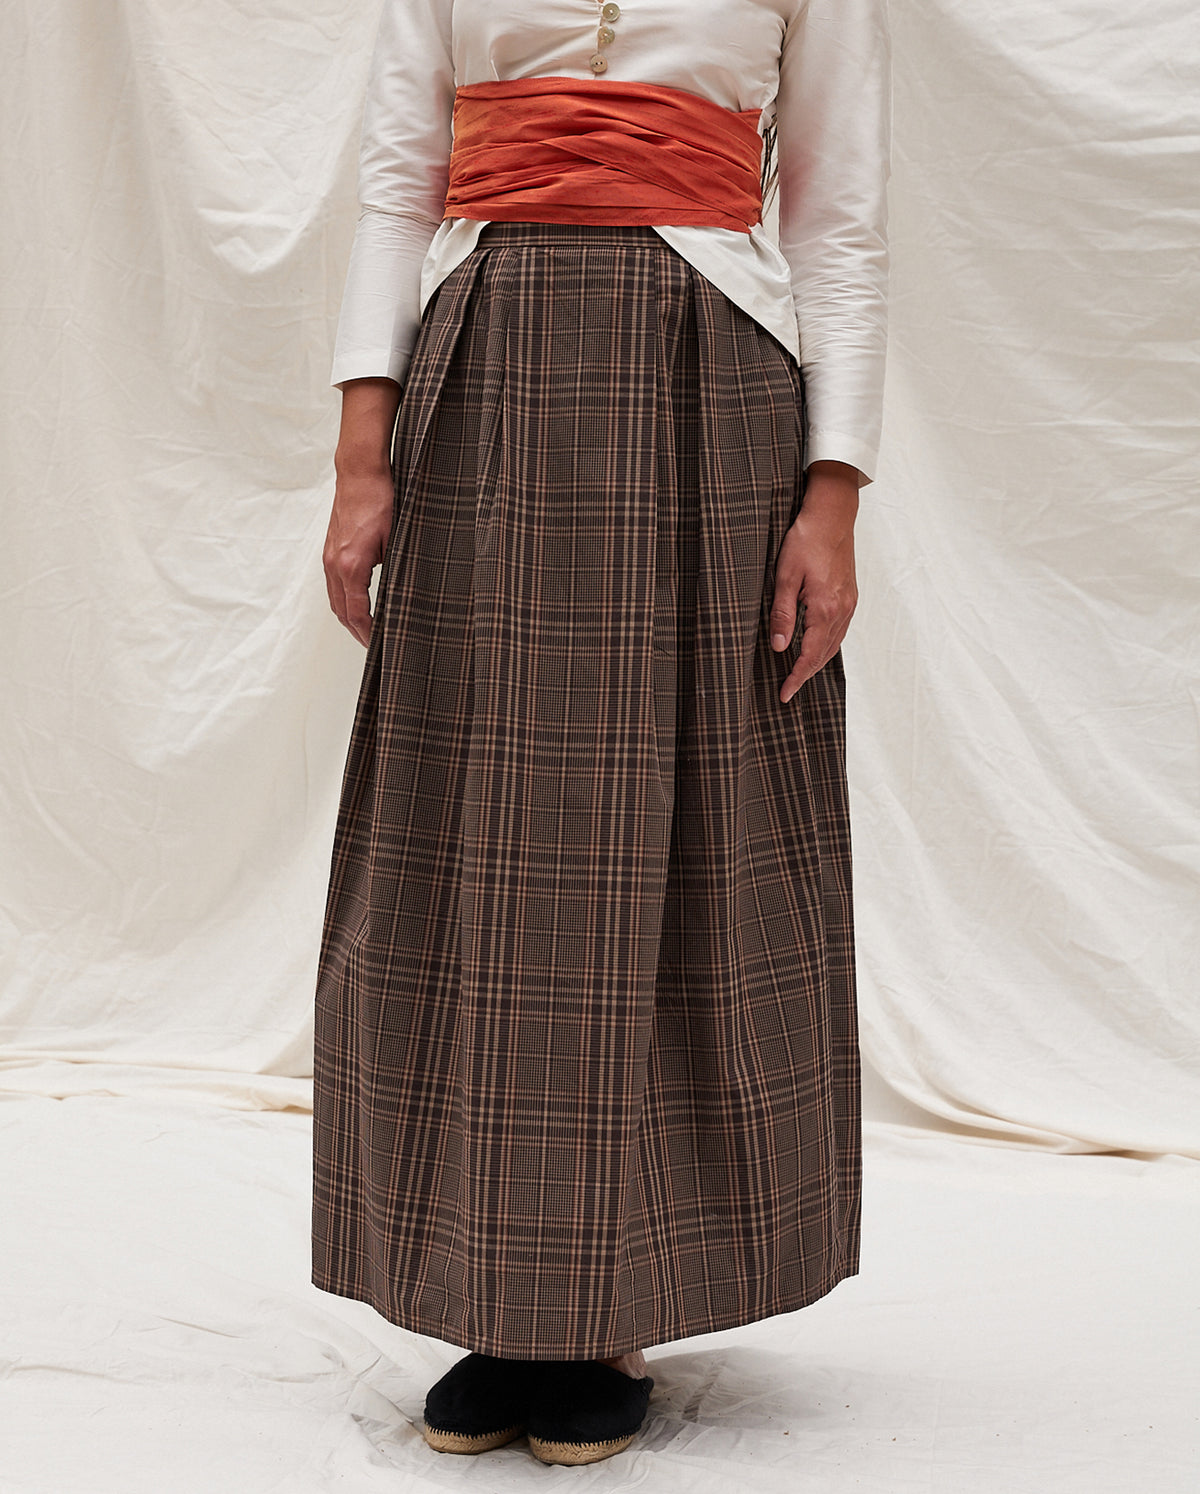 Athena Skirt